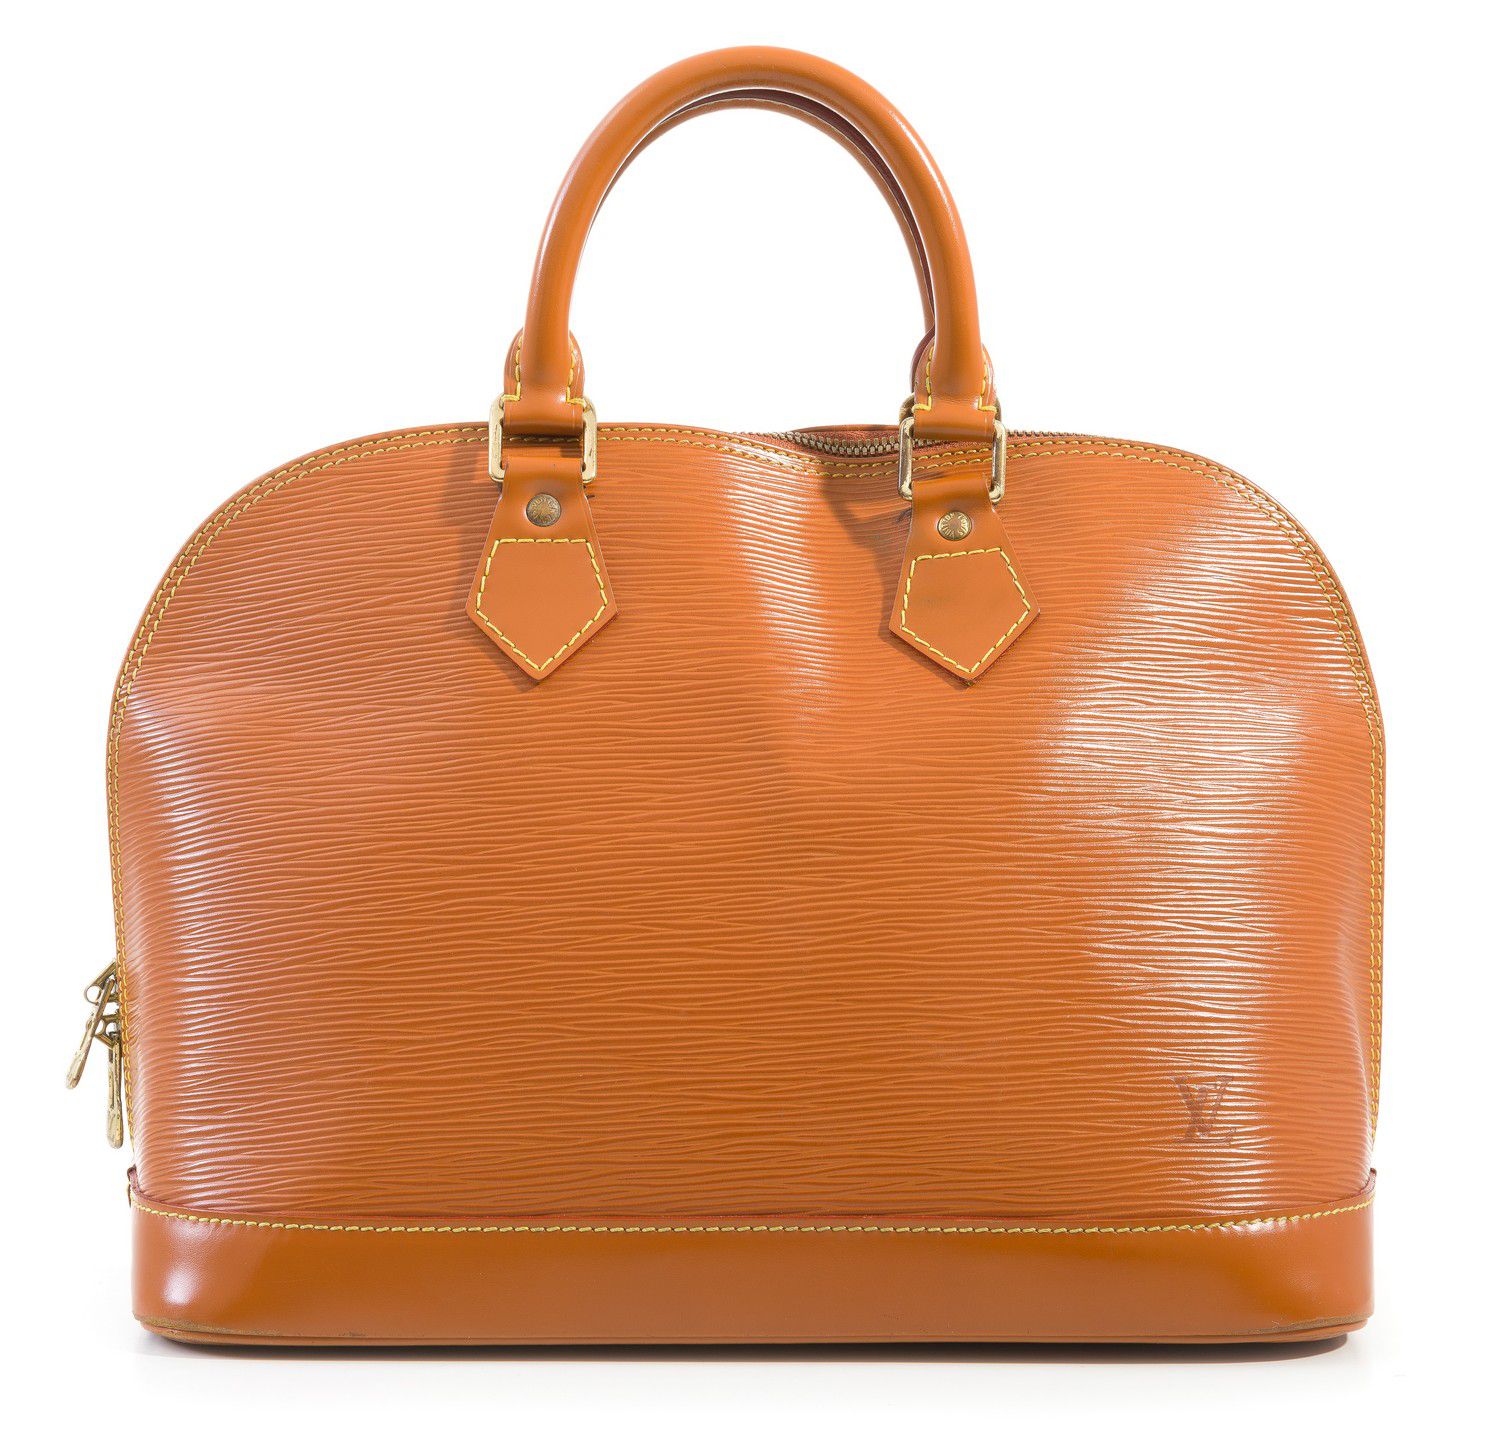 Louis Vuitton Tan Epi Leather Alma Handbag with Gold Hardware ...